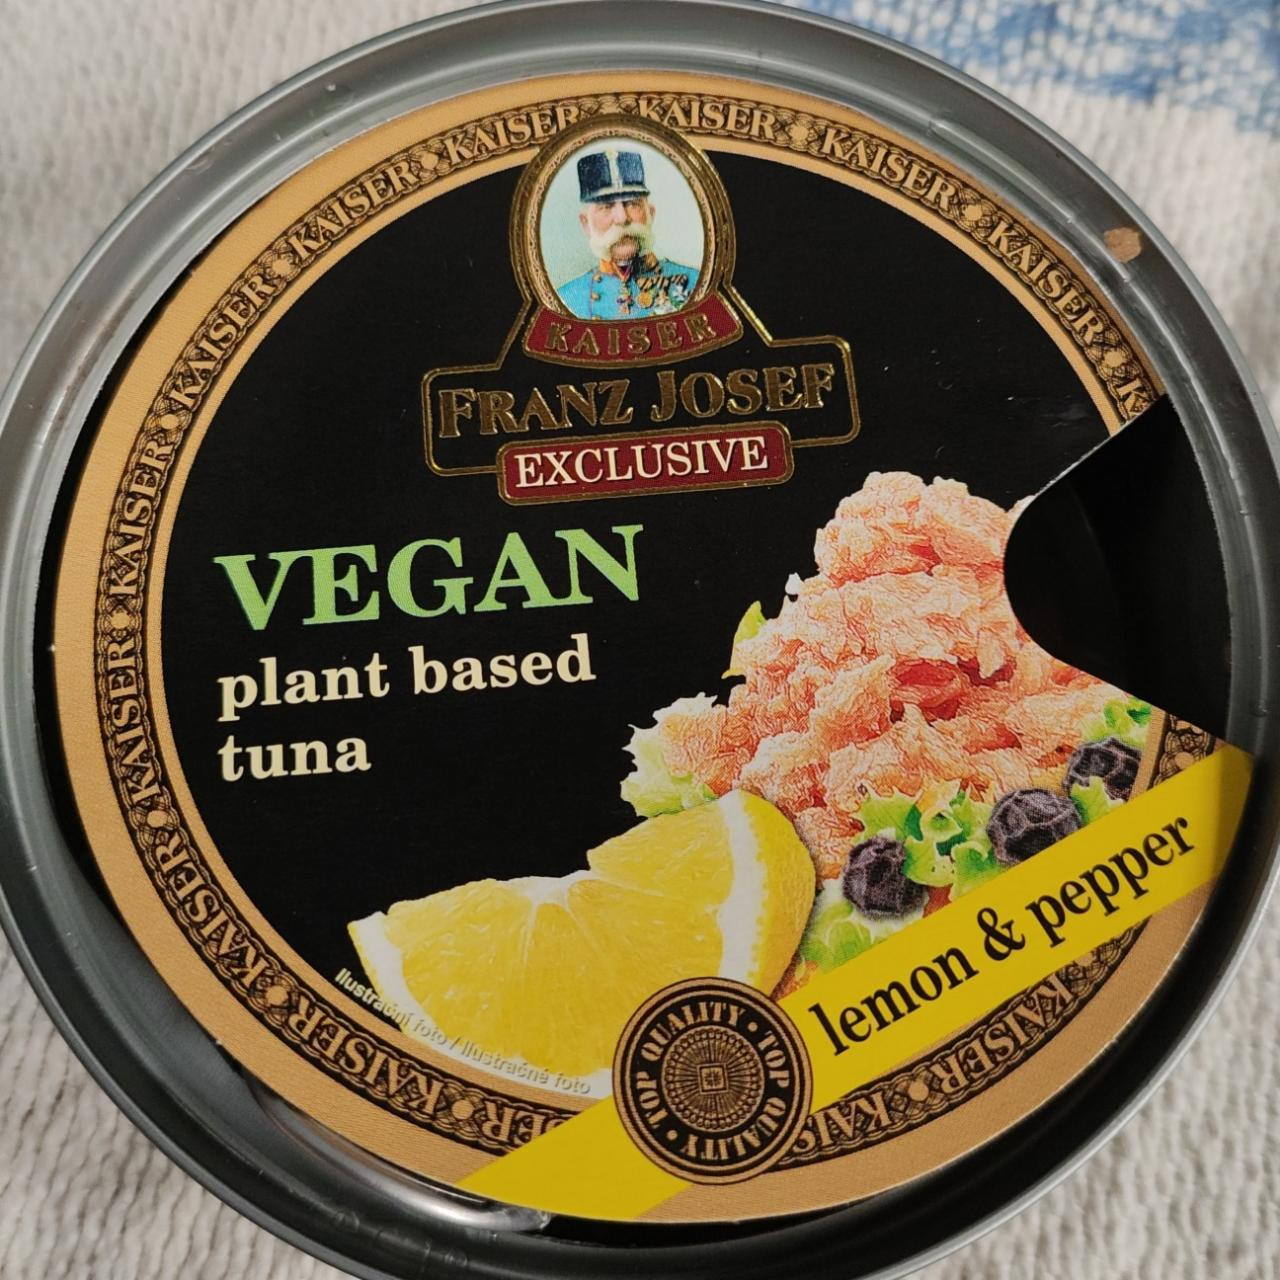 Fotografie - Vegan plant based tuna lemon & pepper Kaiser Franz Josef